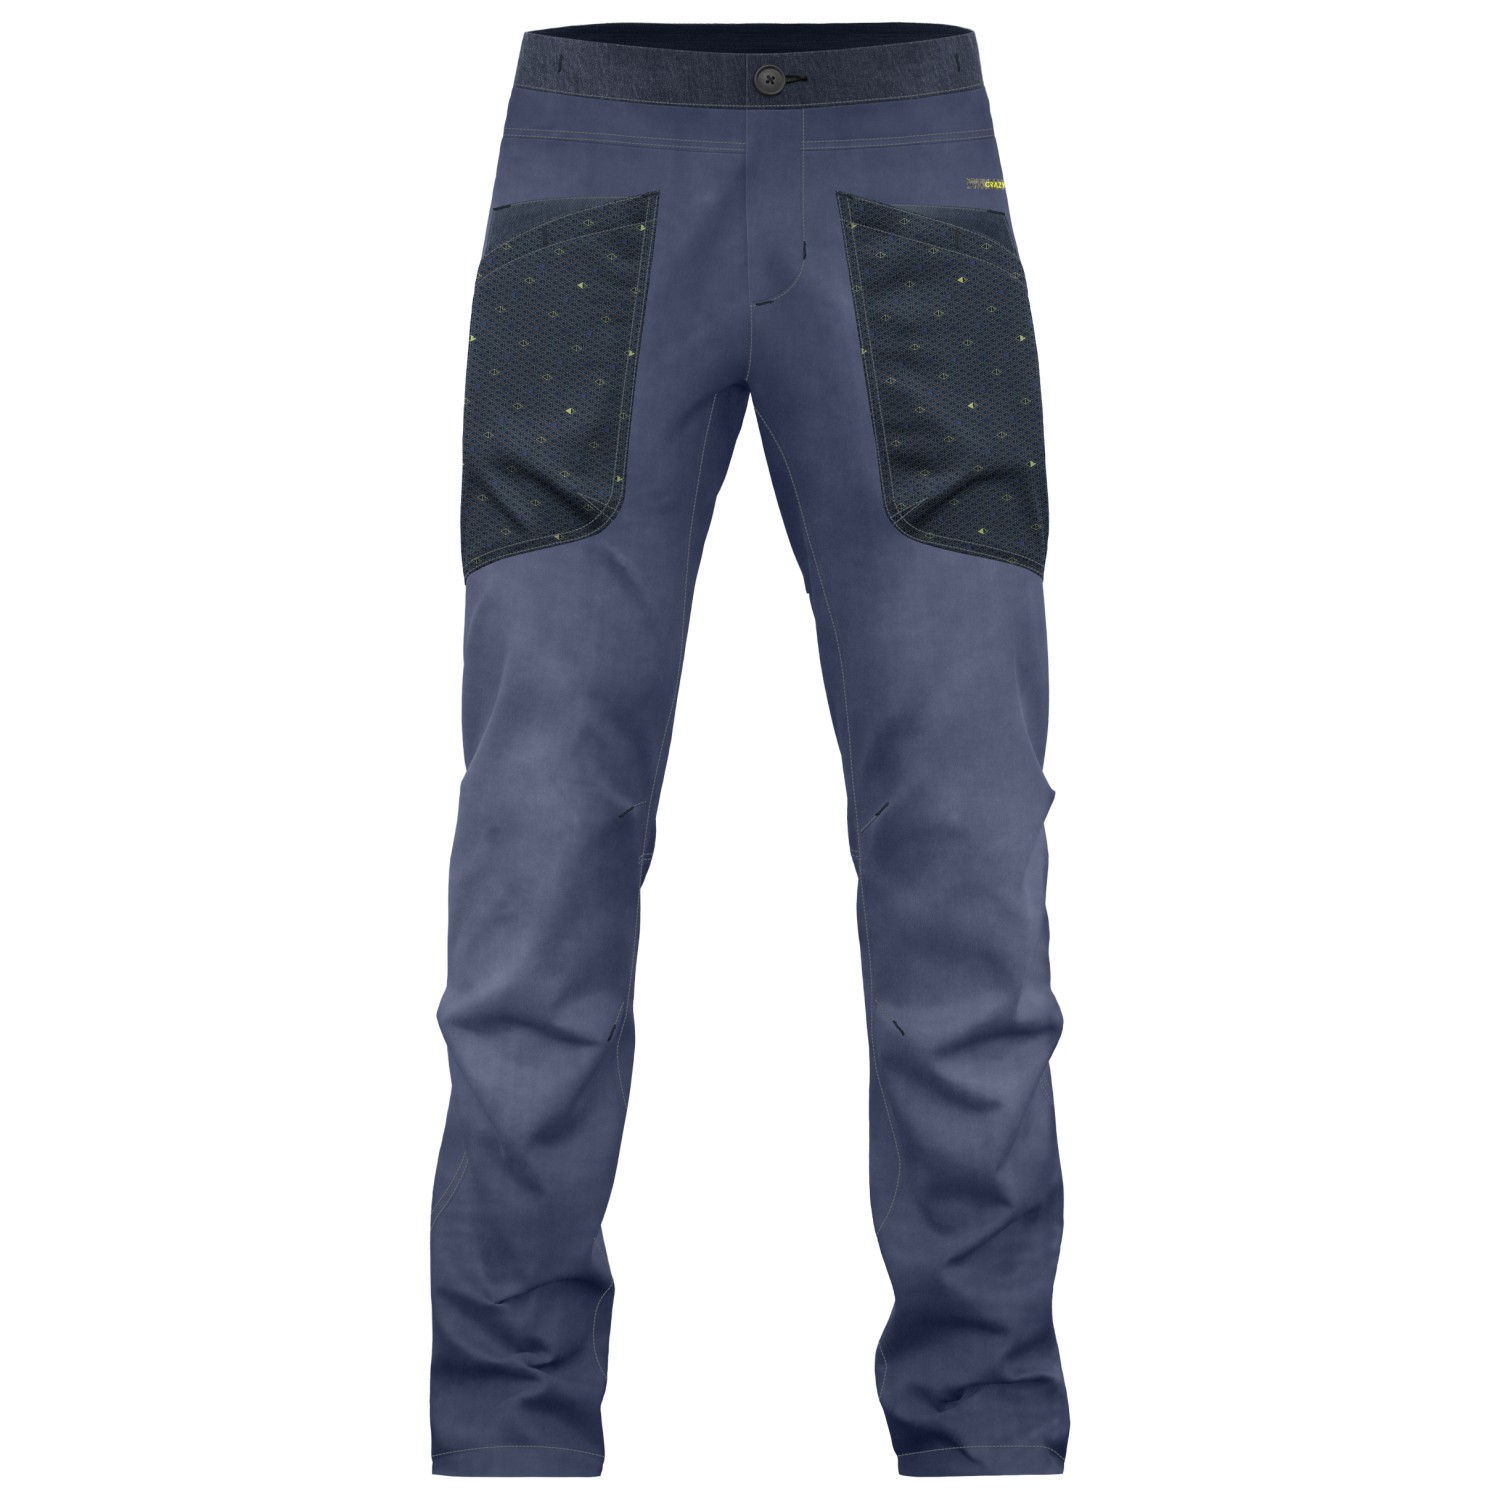 Альпинистские штаны Crazy Idea Pant Gulliver Light, цвет Vento брюки и джинсы gulliver брюки 12302gmc6304